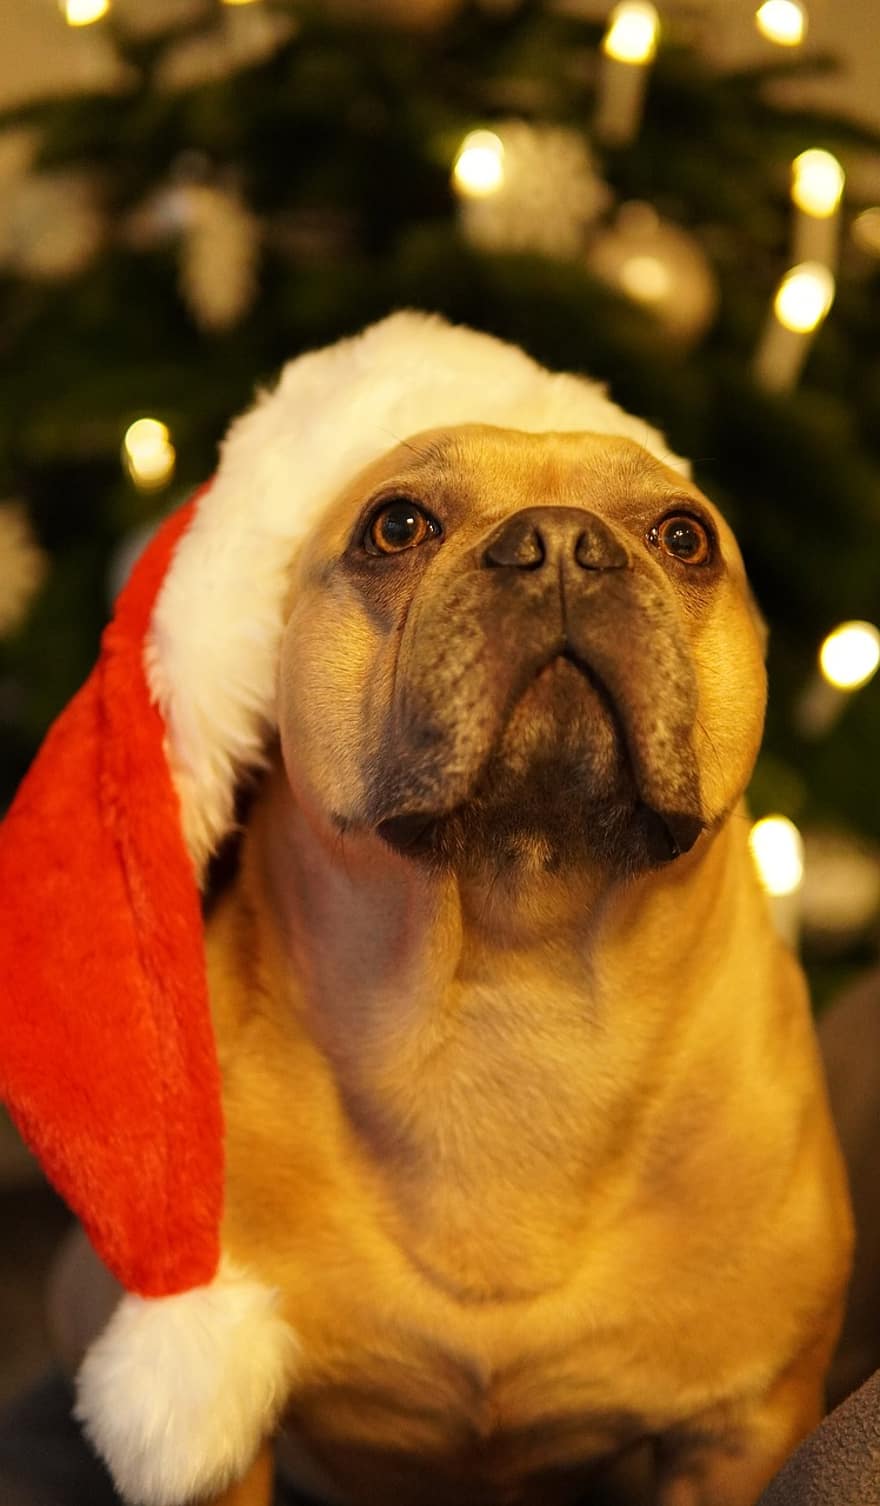 개, 프랑스 불독, 크리스마스, 행복한 휴일, 피곤한, 눈을 감다, 산타 모자, 크리스마스 트리, 전나무, 인사말 카드, 귀엽다